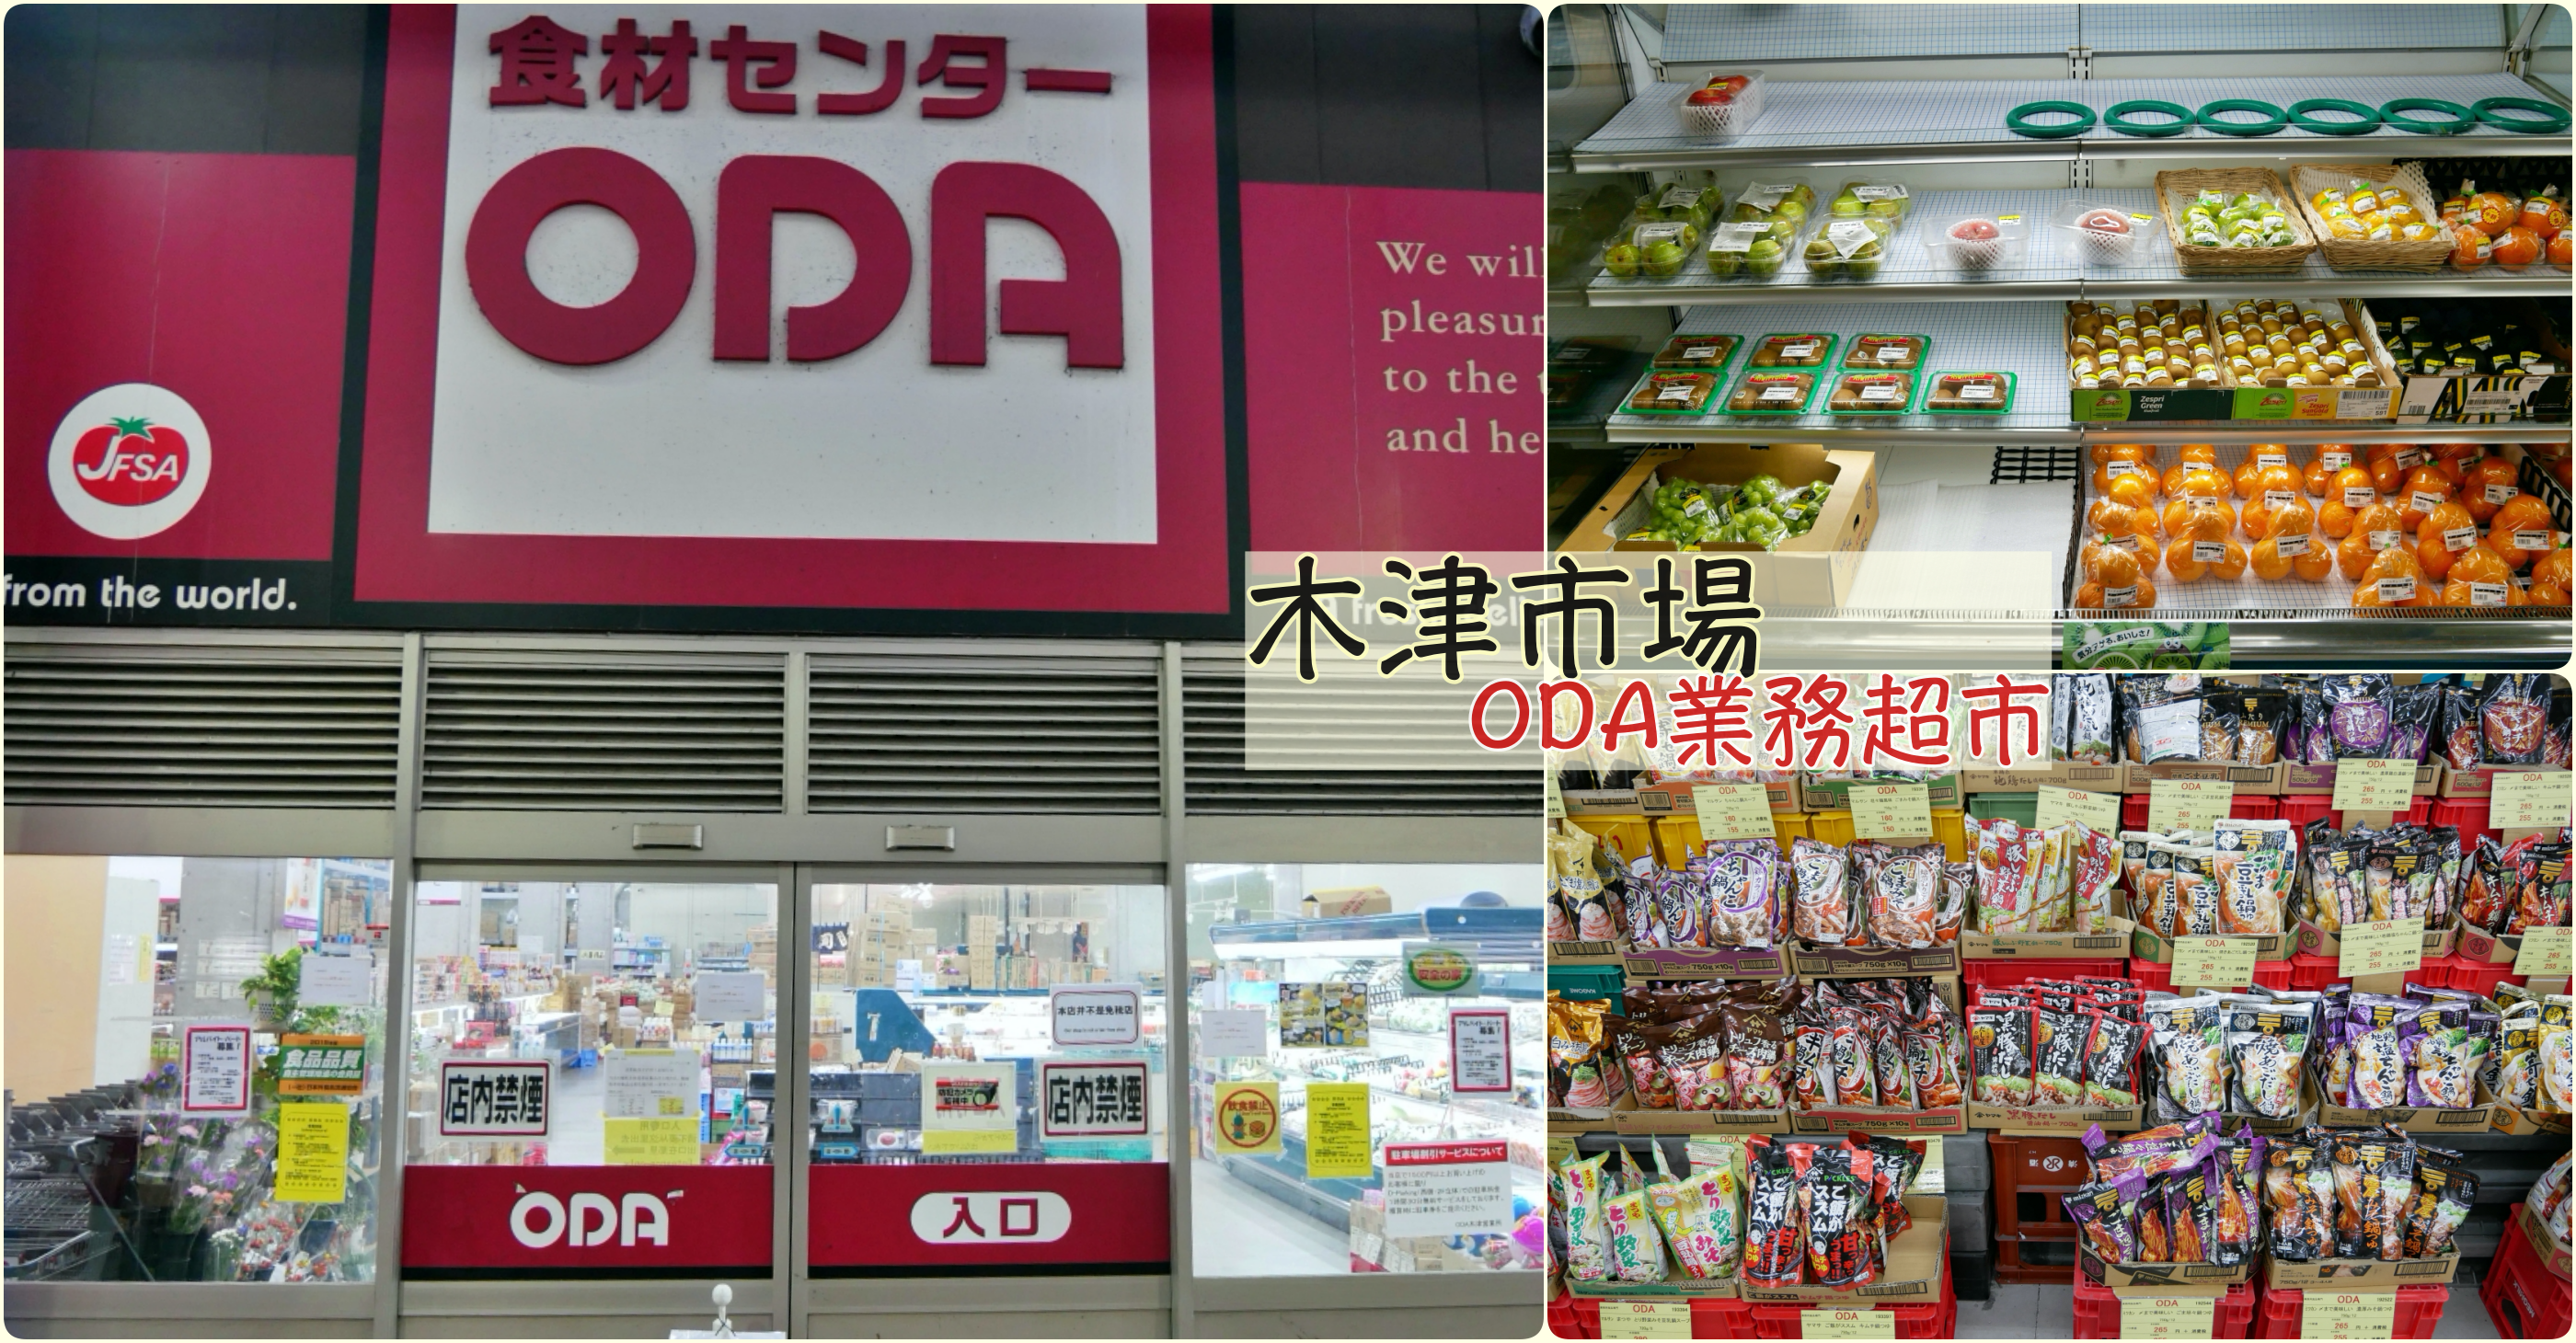 [大阪景點]大阪木津市場/ODA木津市場店|在地人會逛的市場~ODA營業用超市批貨去 @VIVIYU小世界